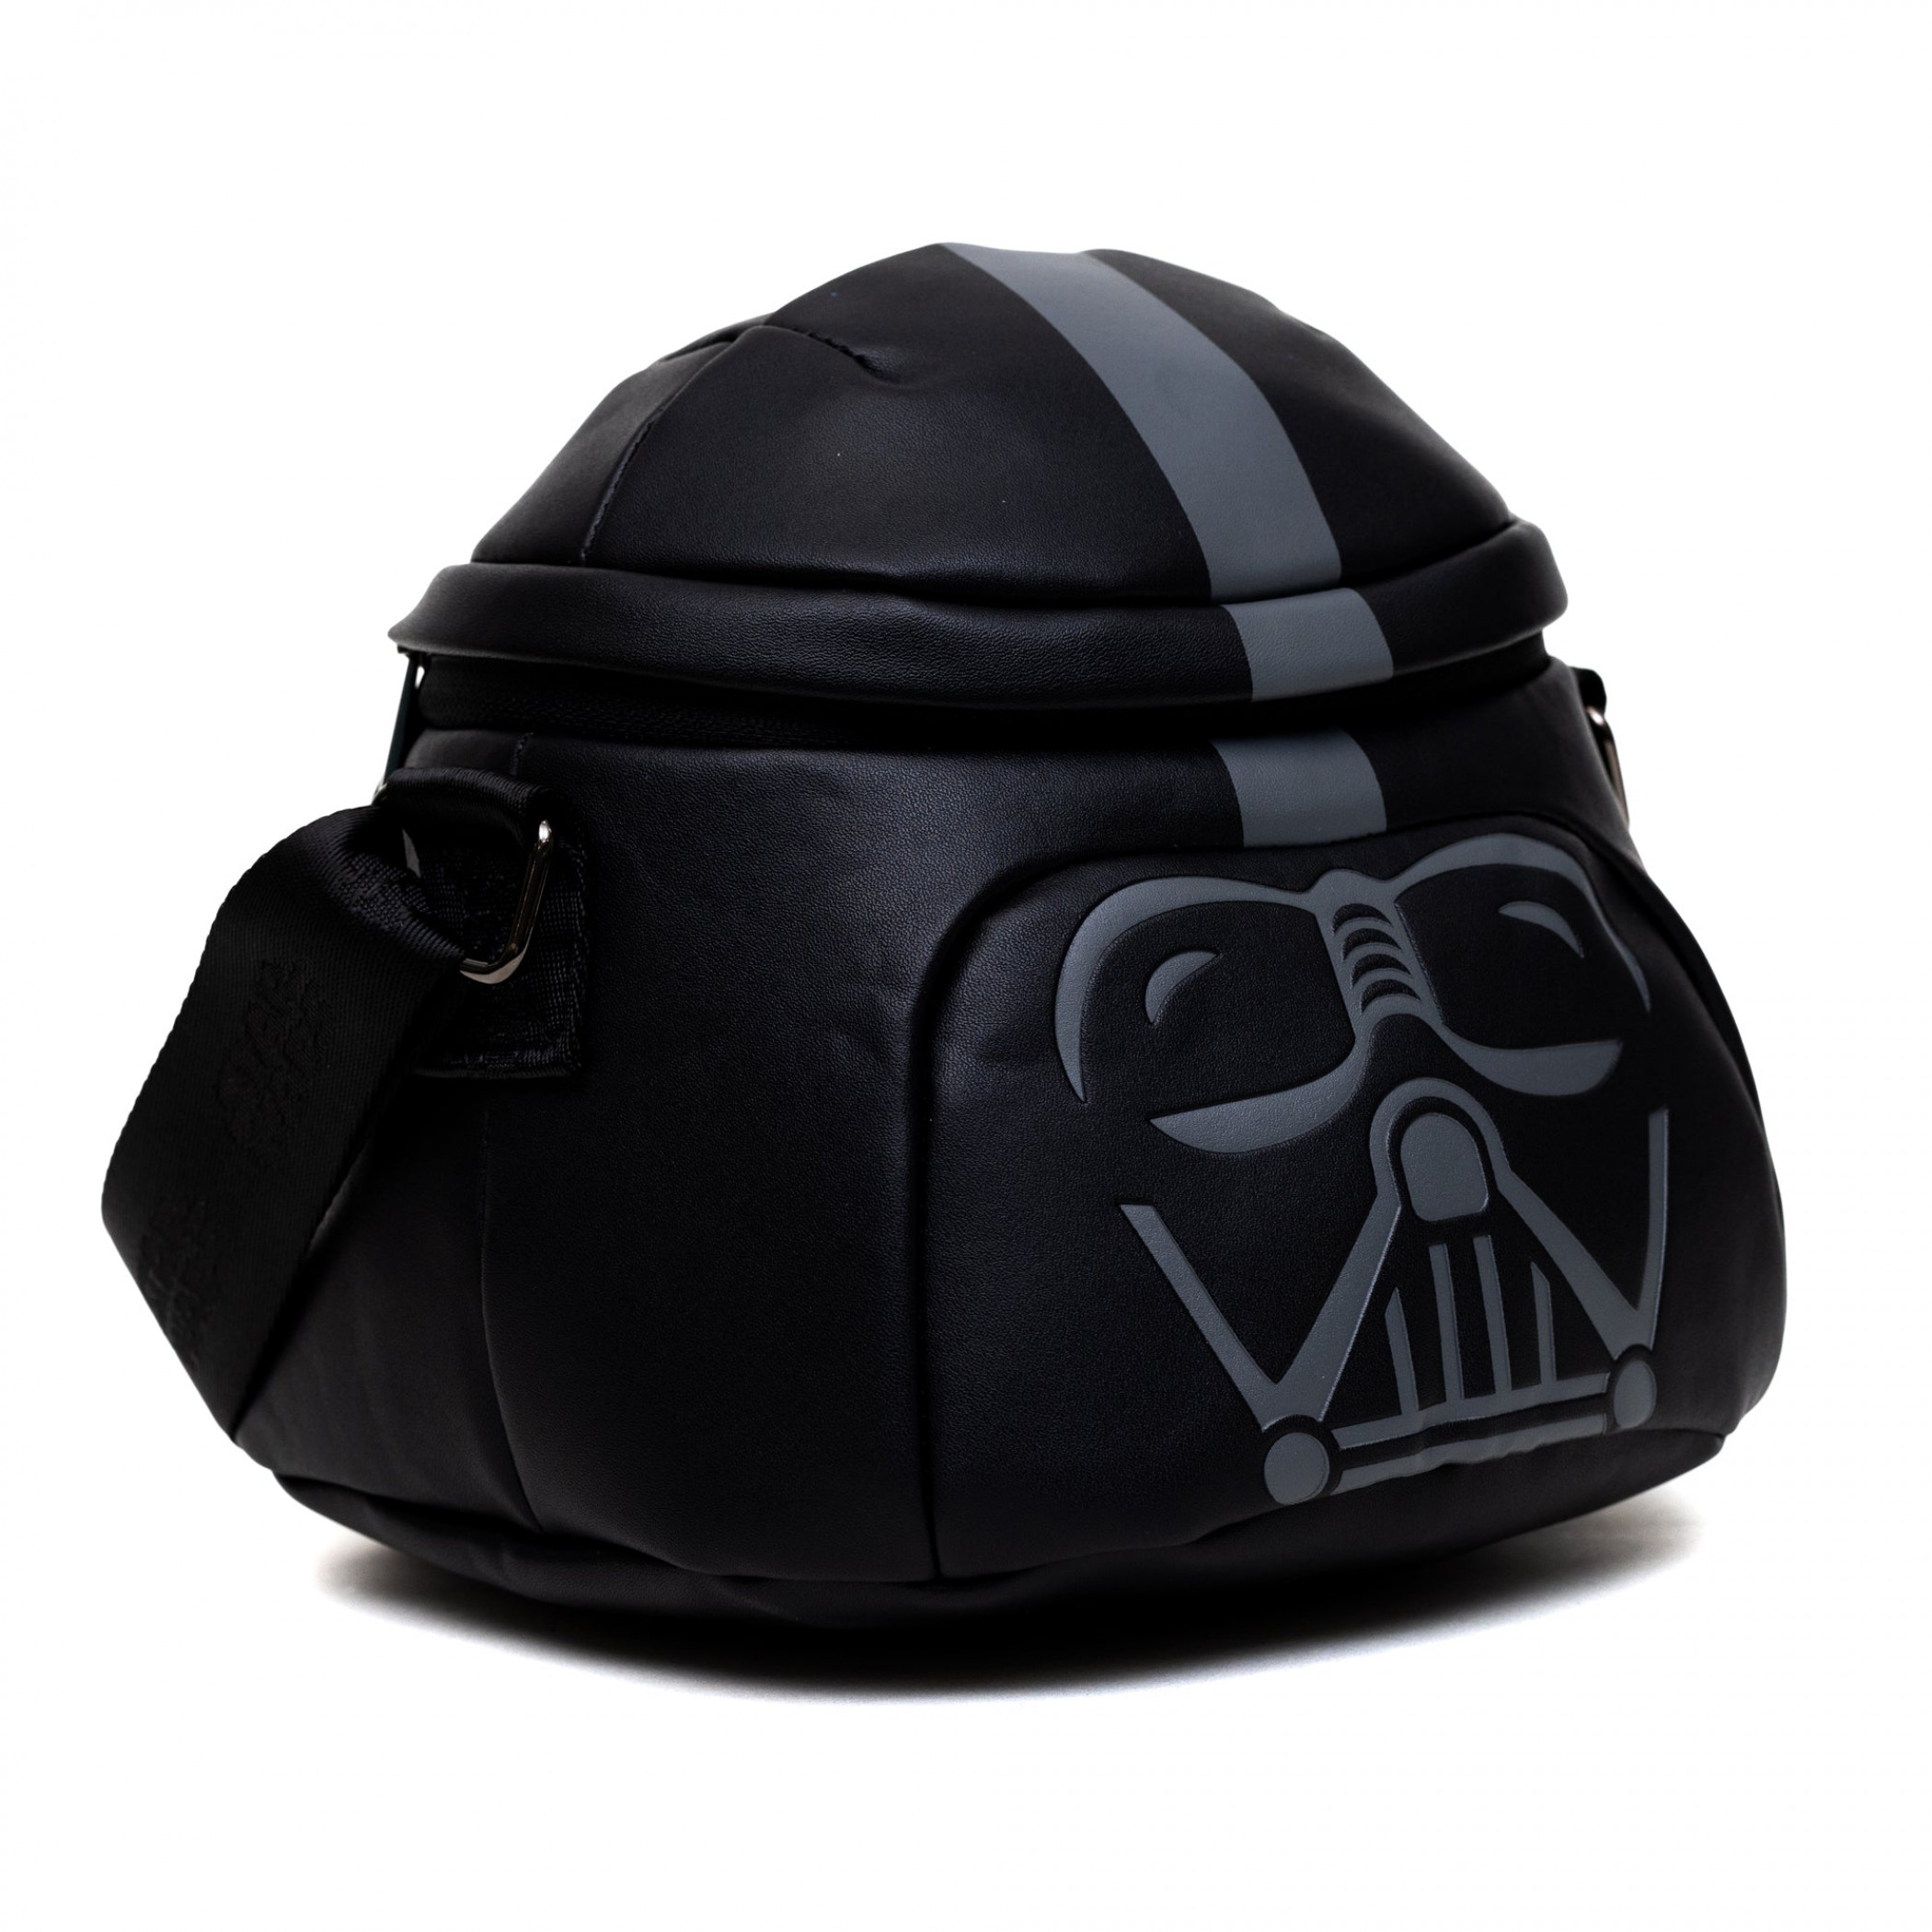 Star Wars Darth Vader's Helmet Figural Crossbody Bag